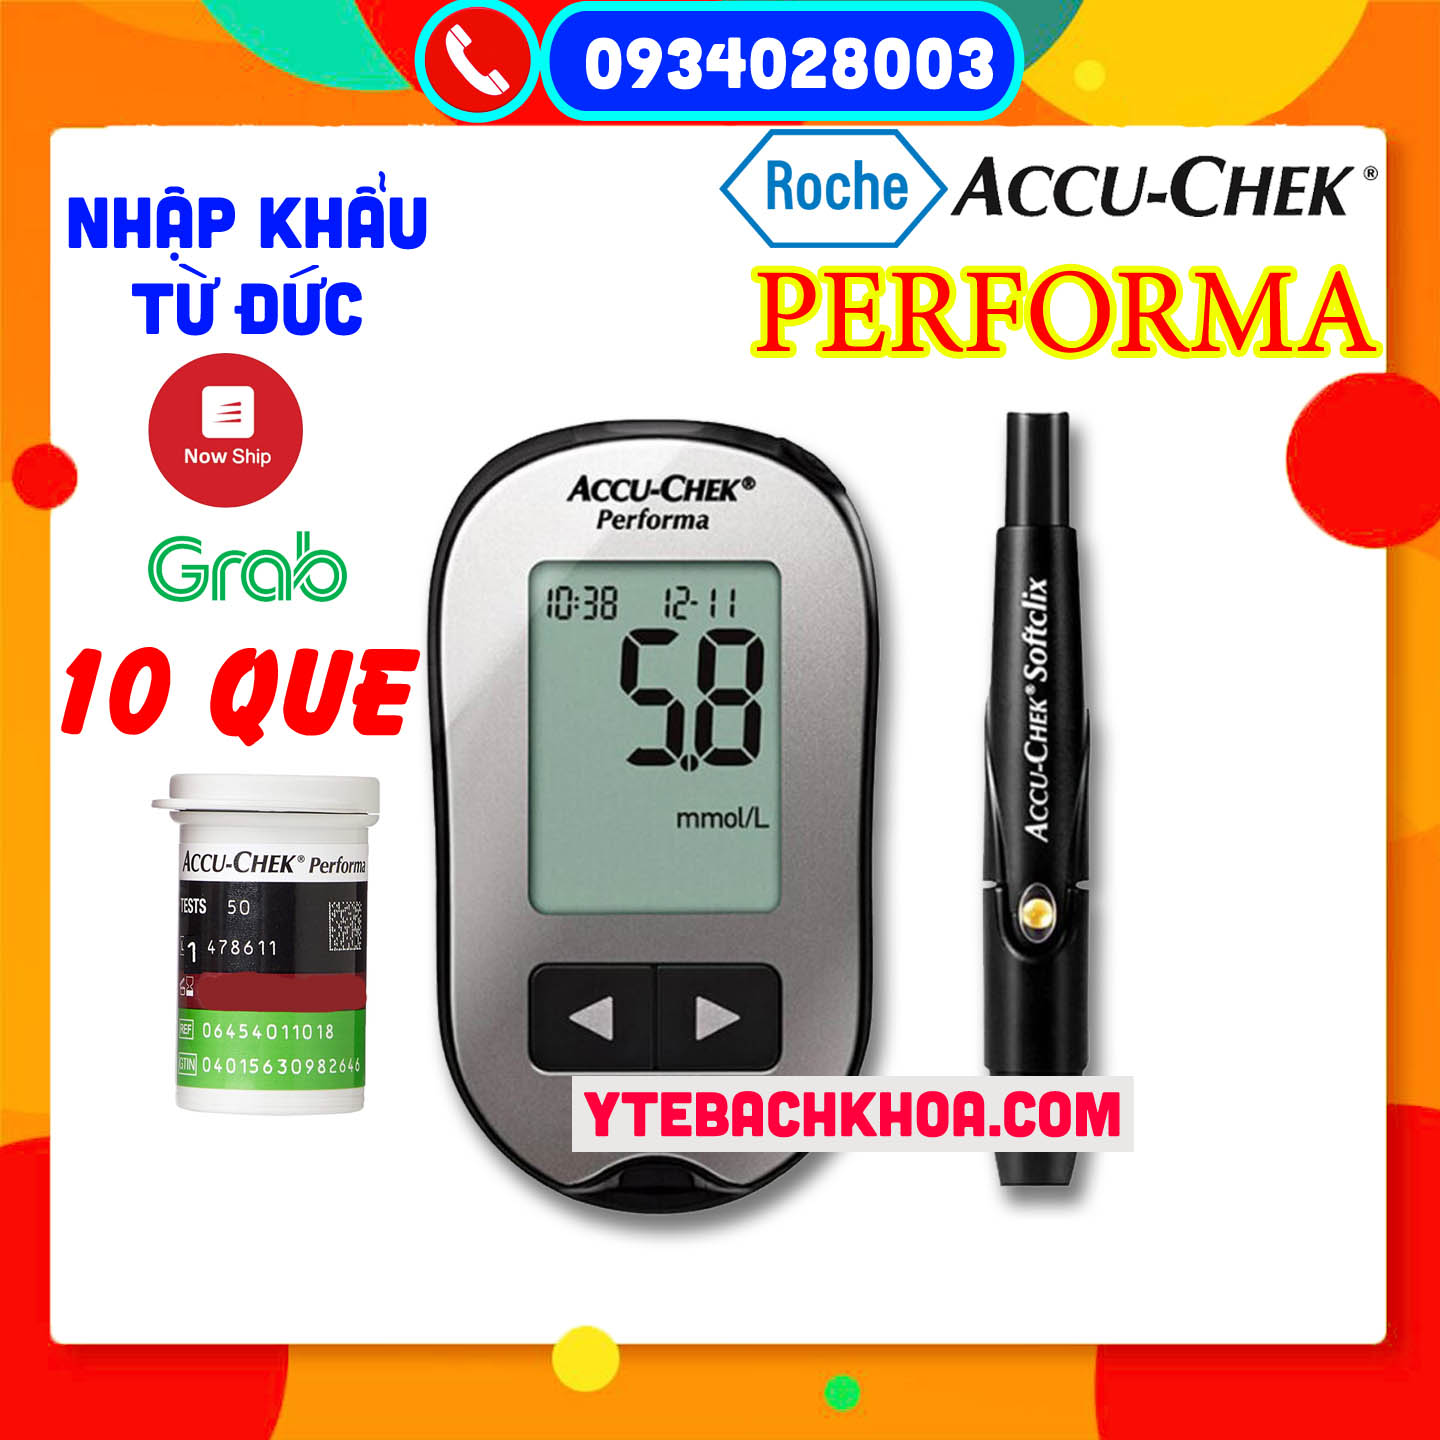 Máy đo đường huyết Accu-Chek Performa thế hệ 2